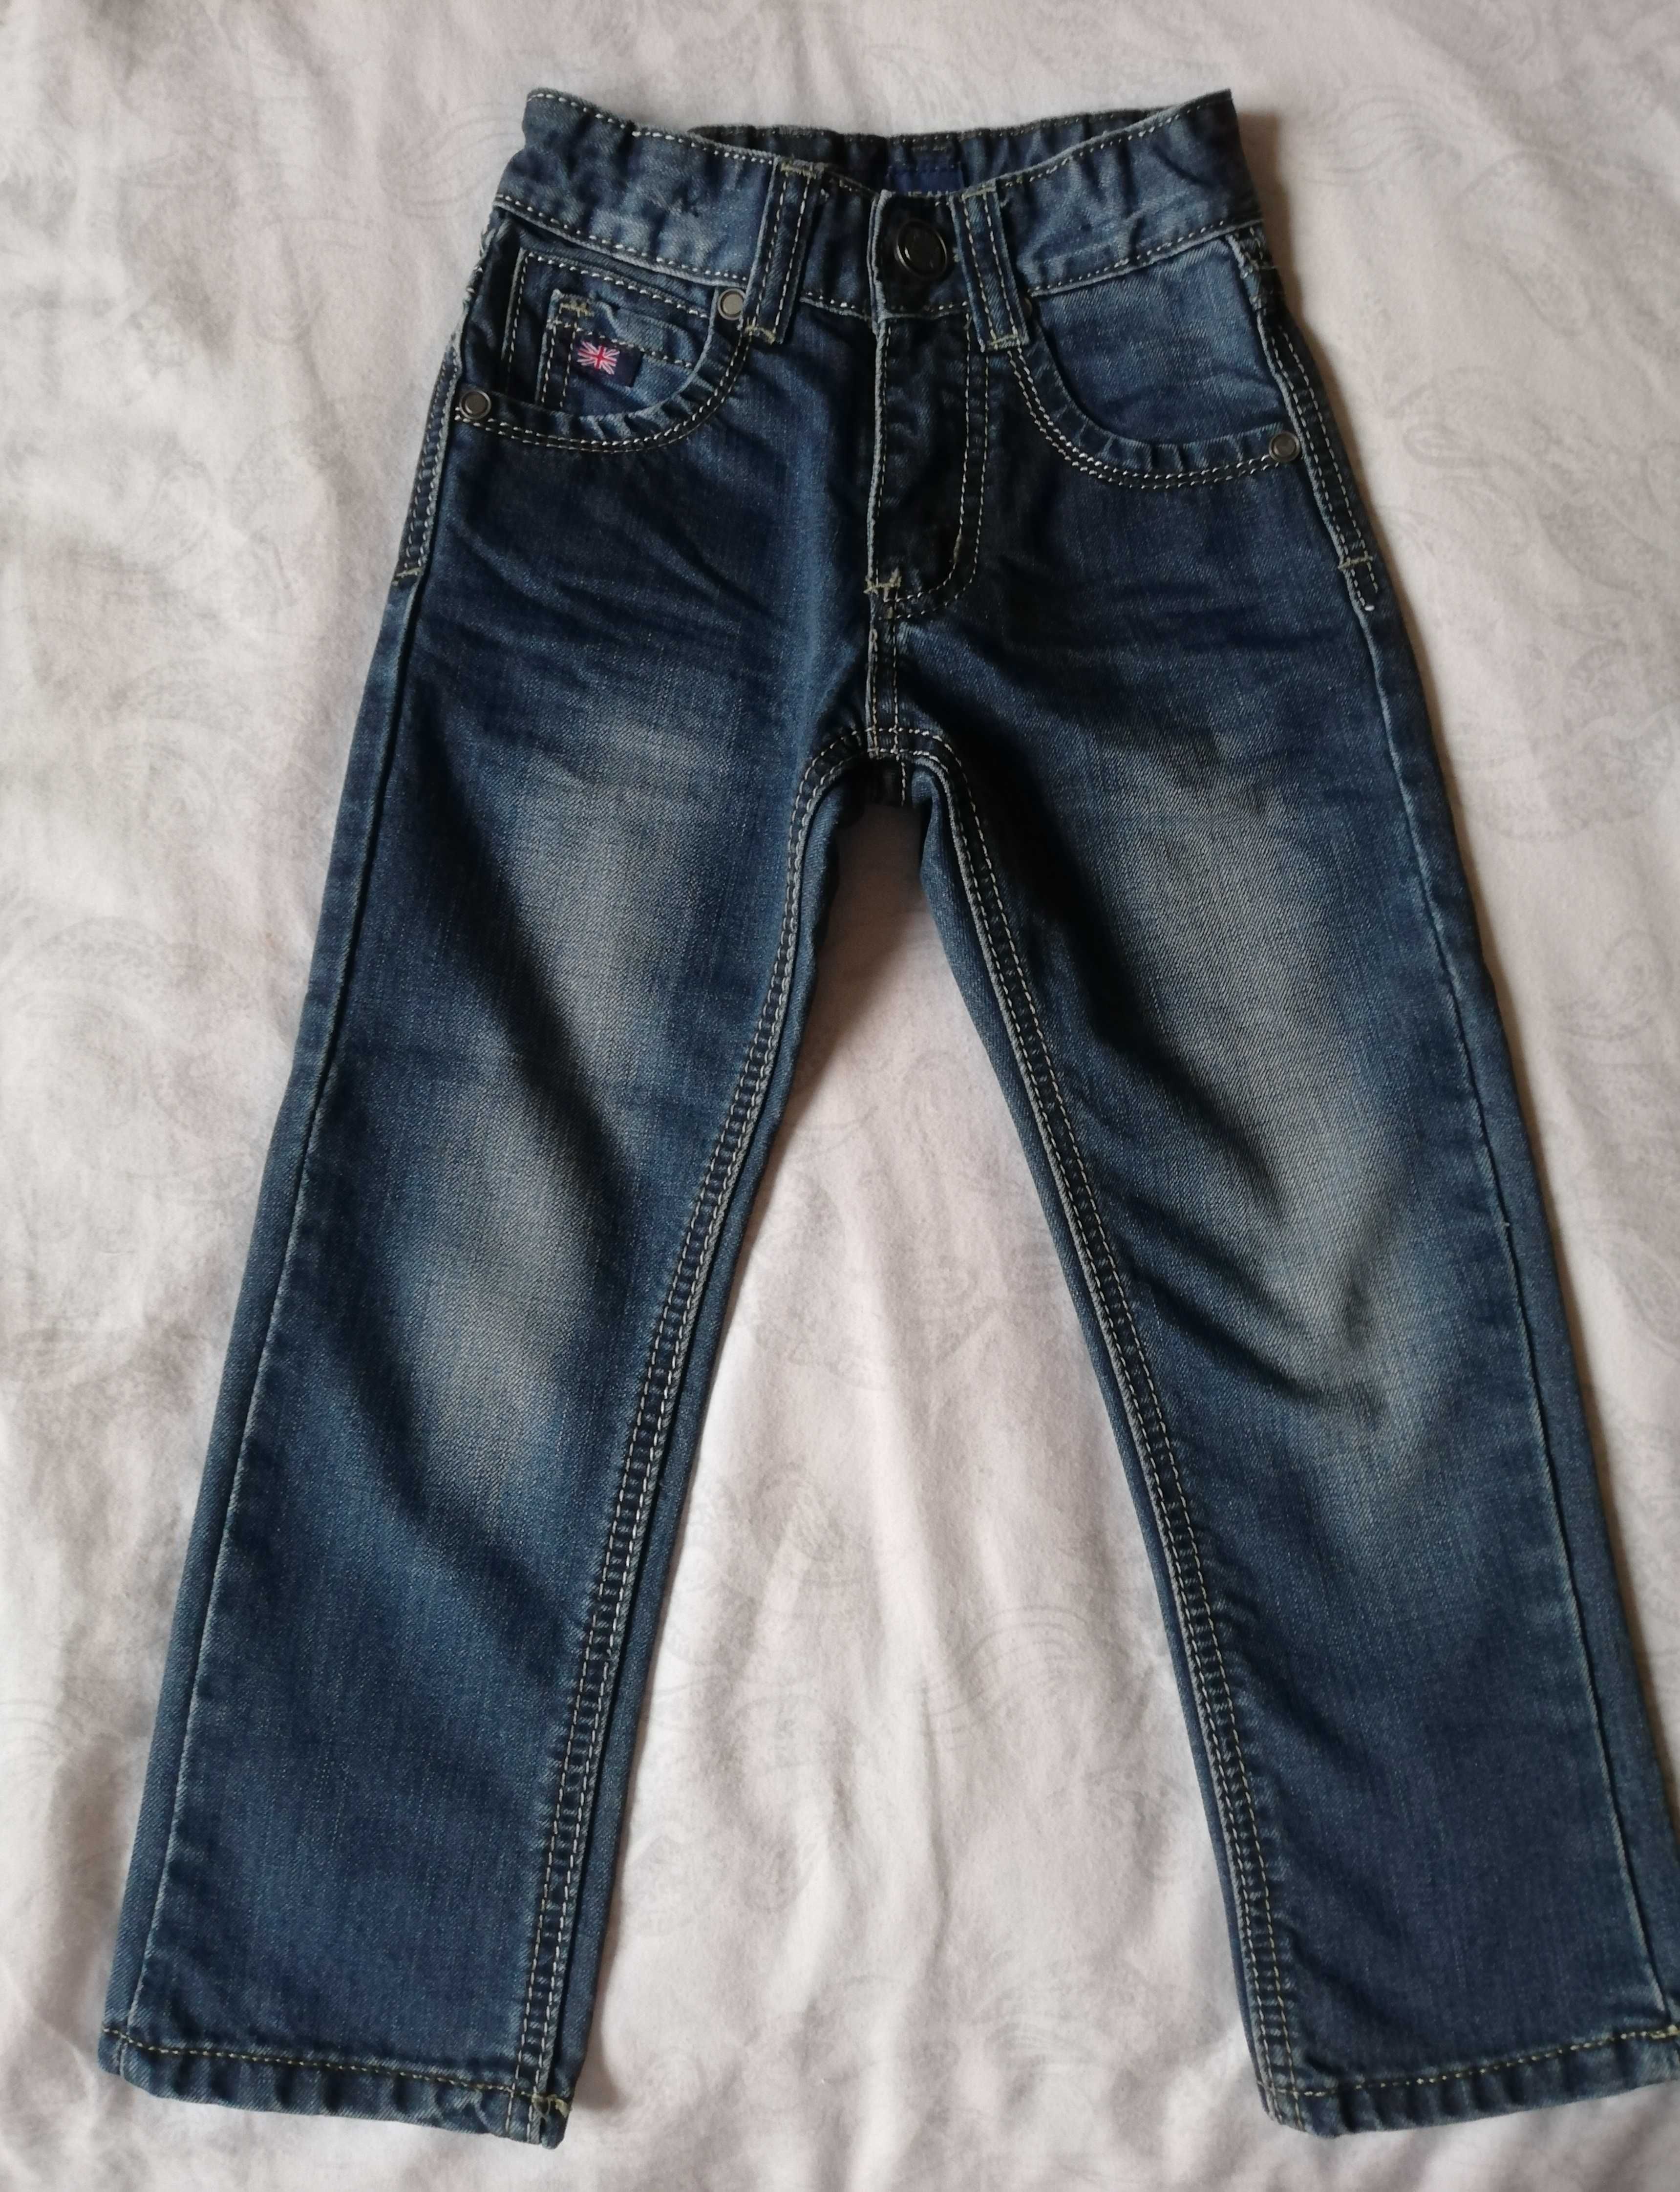 spodnie dżinsowe chłopięce 92 - 98 cm 2  3 lata dżinsy jeans chłopczyk